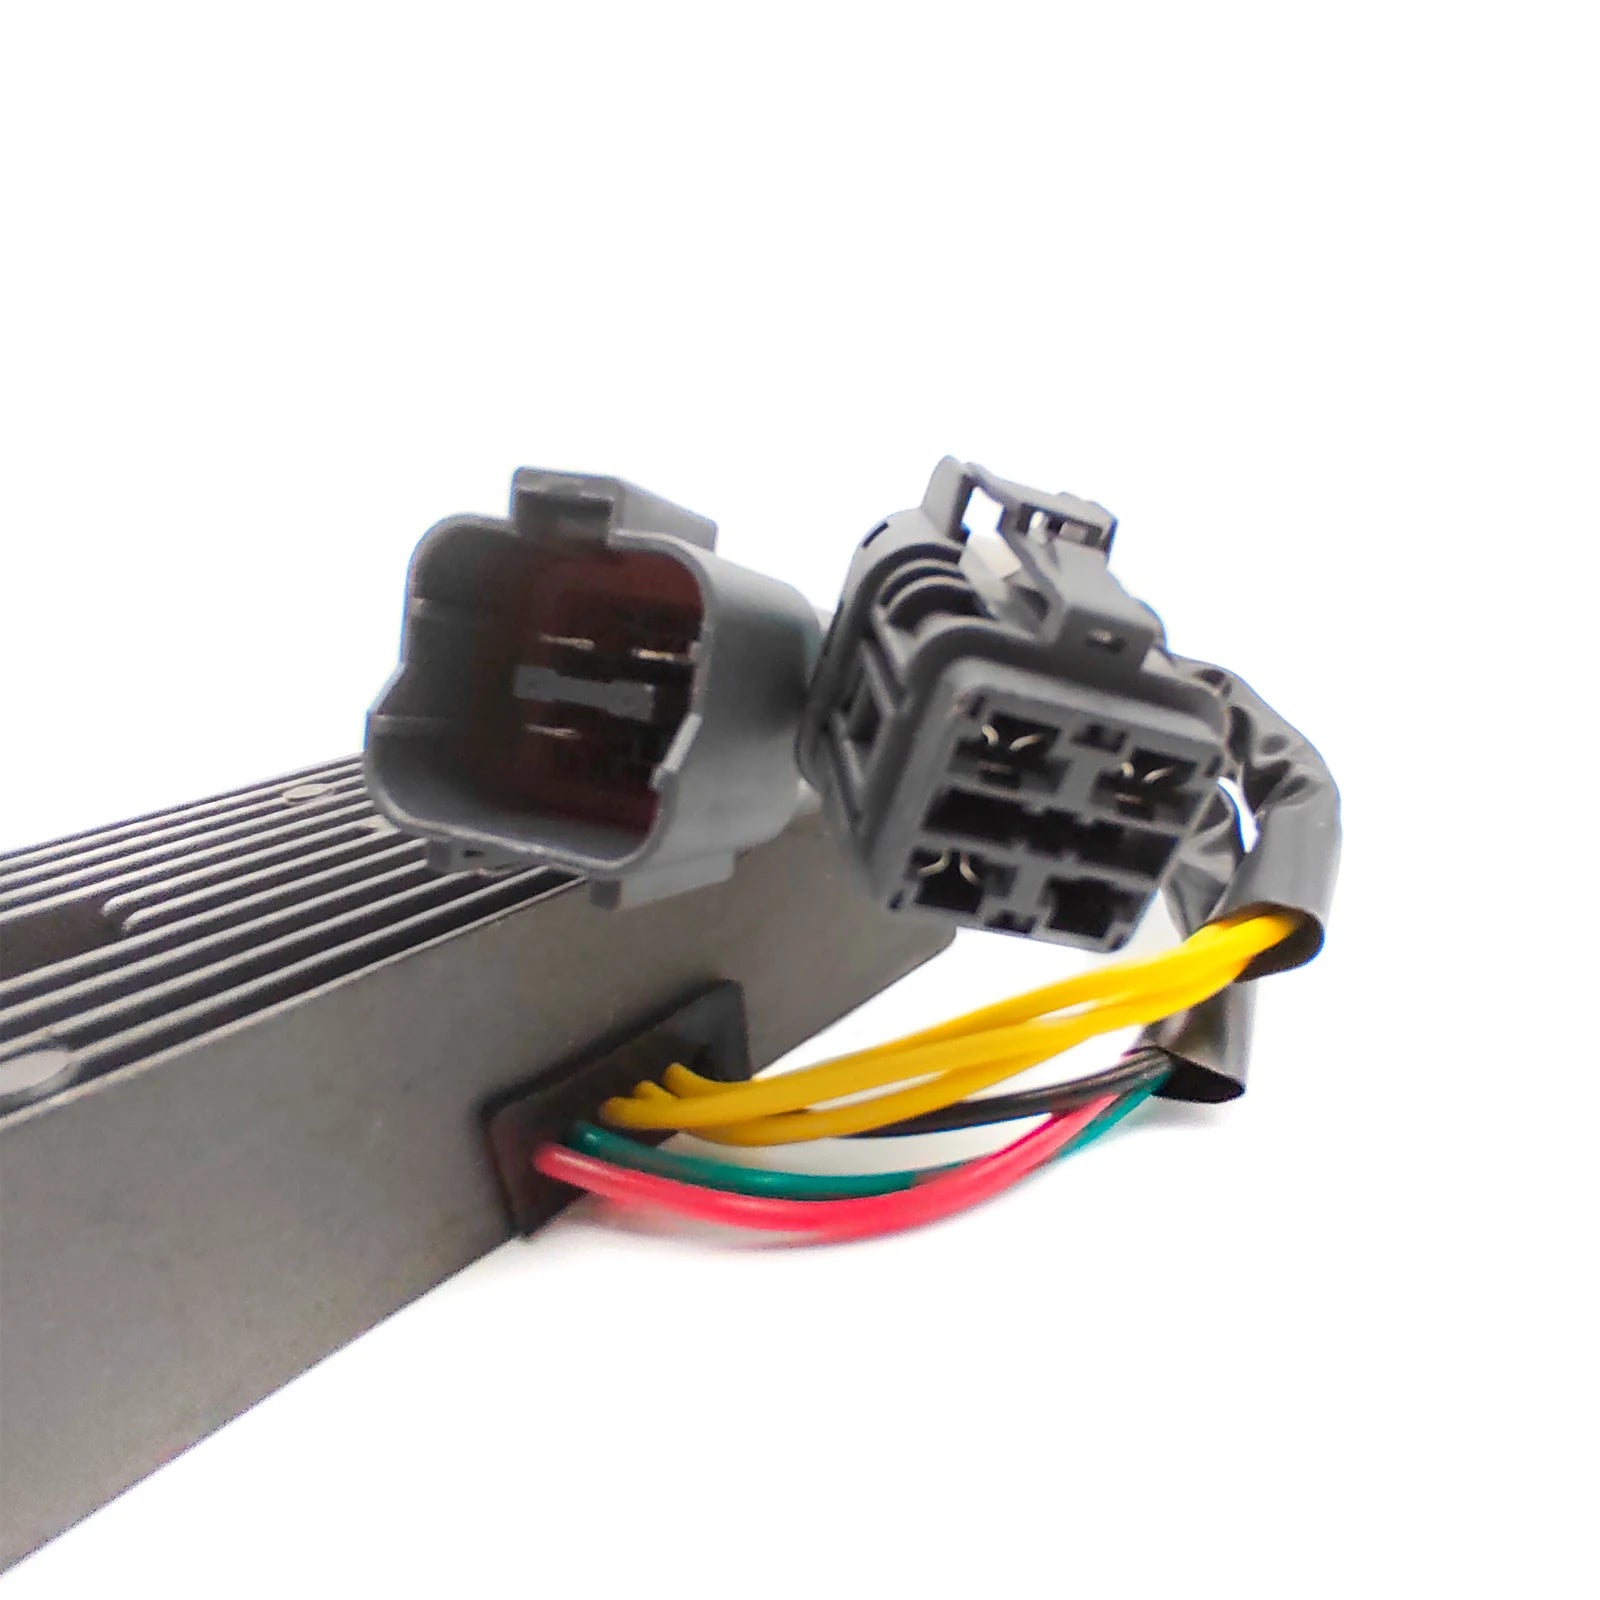 Spannungsregler, kompatibel mit TGB Blade Target ATVs, zuverlässige Gleichrichtertechnologie